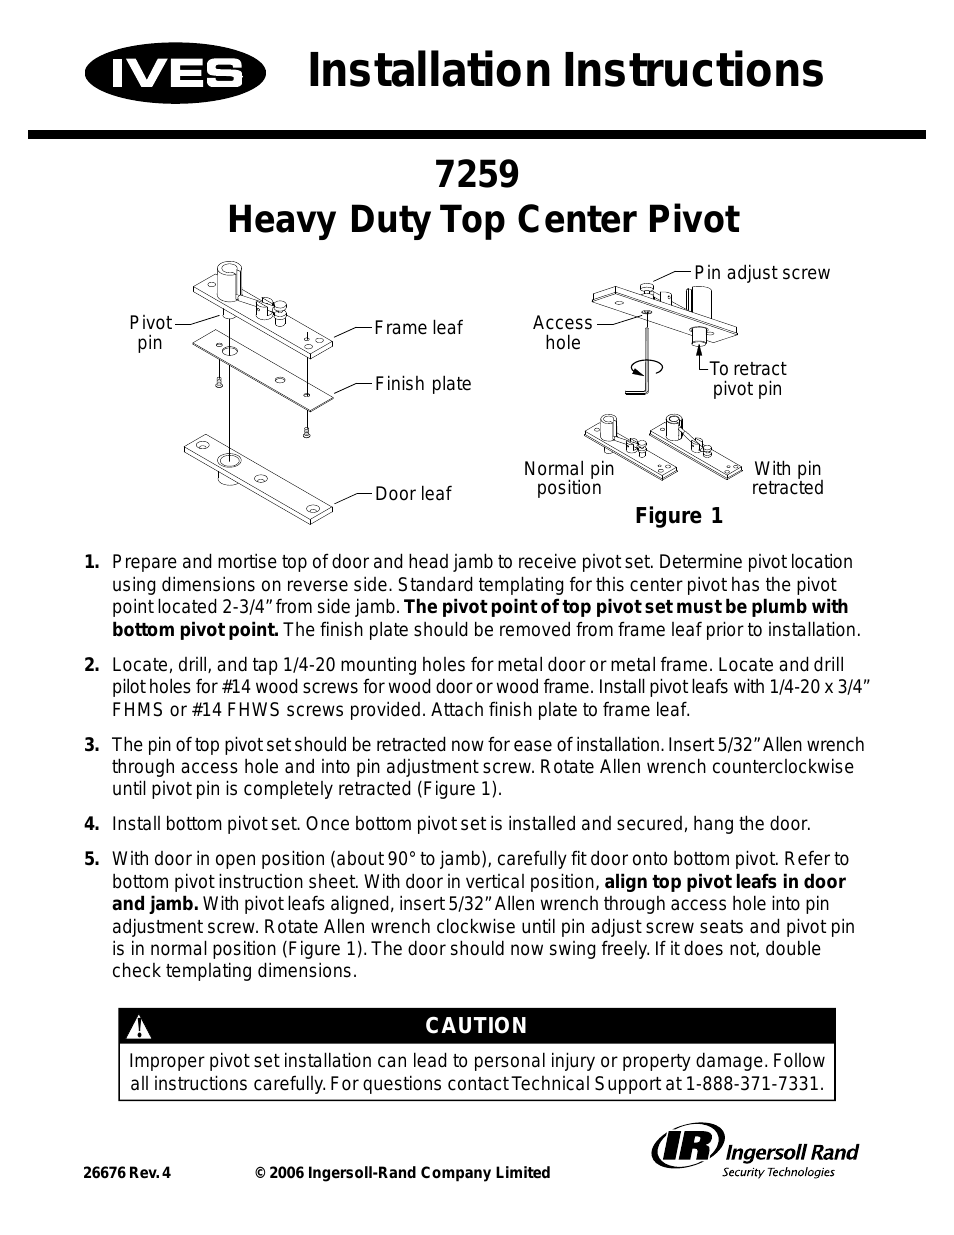 Heavy Duty Top Center Pivot 7259